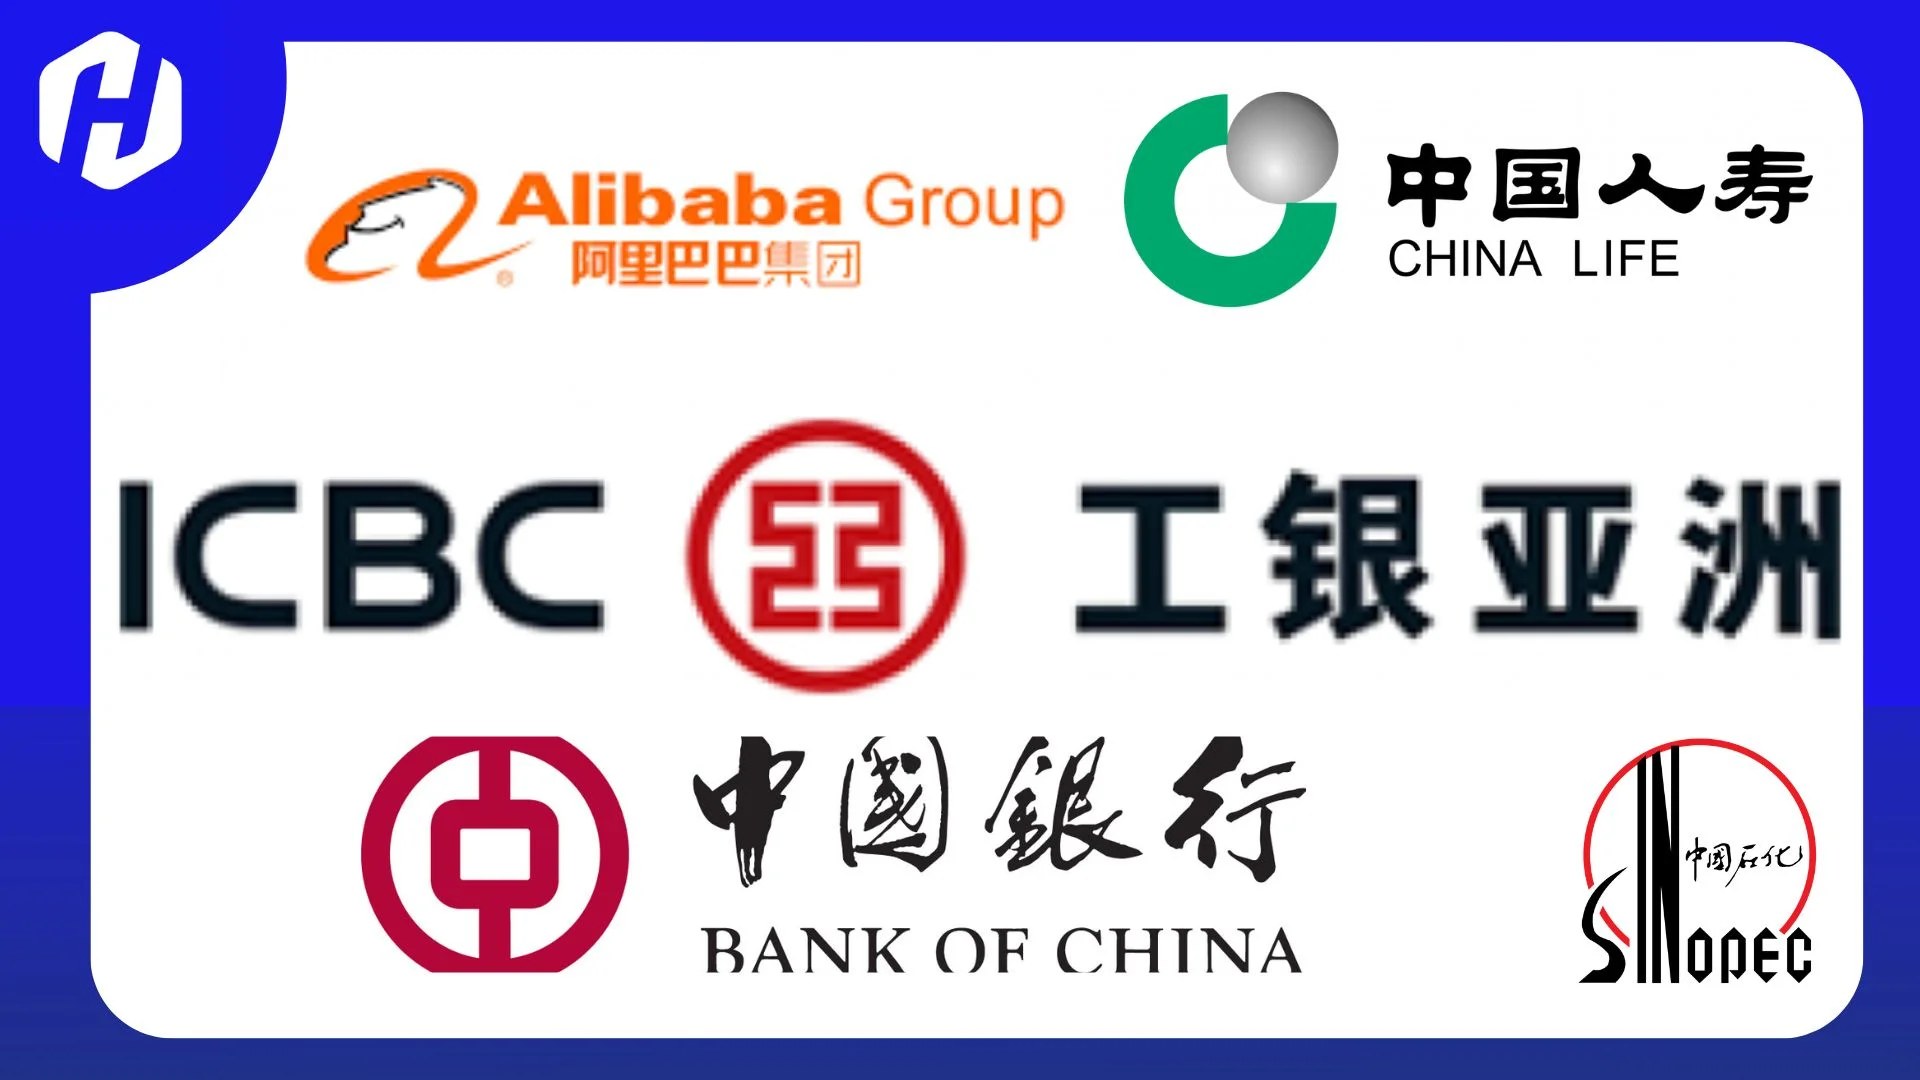 perusahaan terkemuka yang terdaftar dalam Shanghai Composite